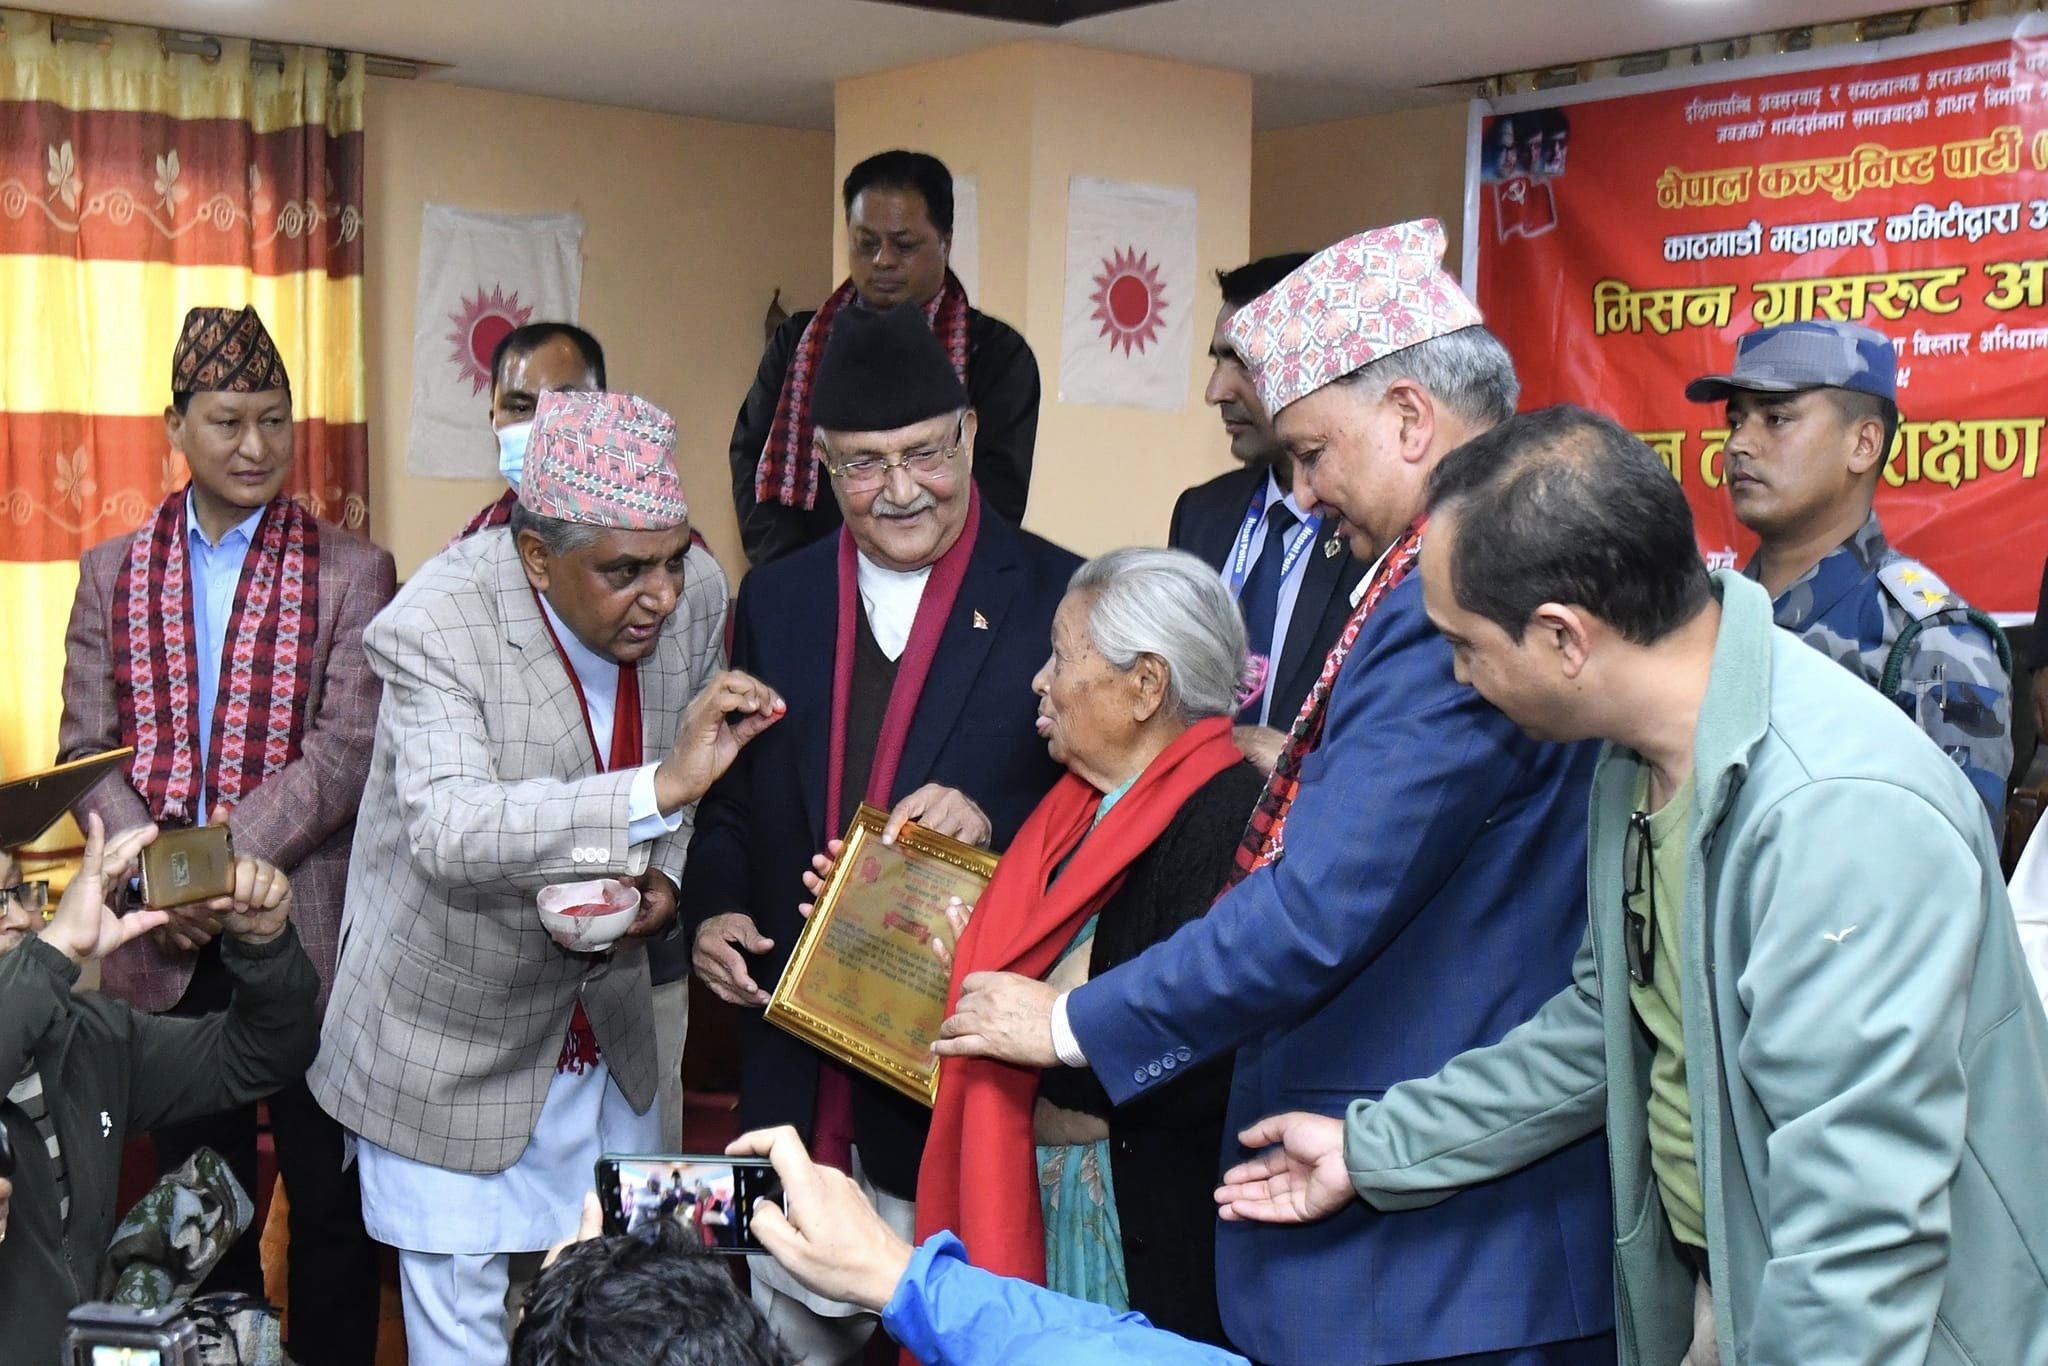 नेपाल असफल राष्ट्र बन्ने खतरा देखियो: एमाले अध्यक्ष ओली